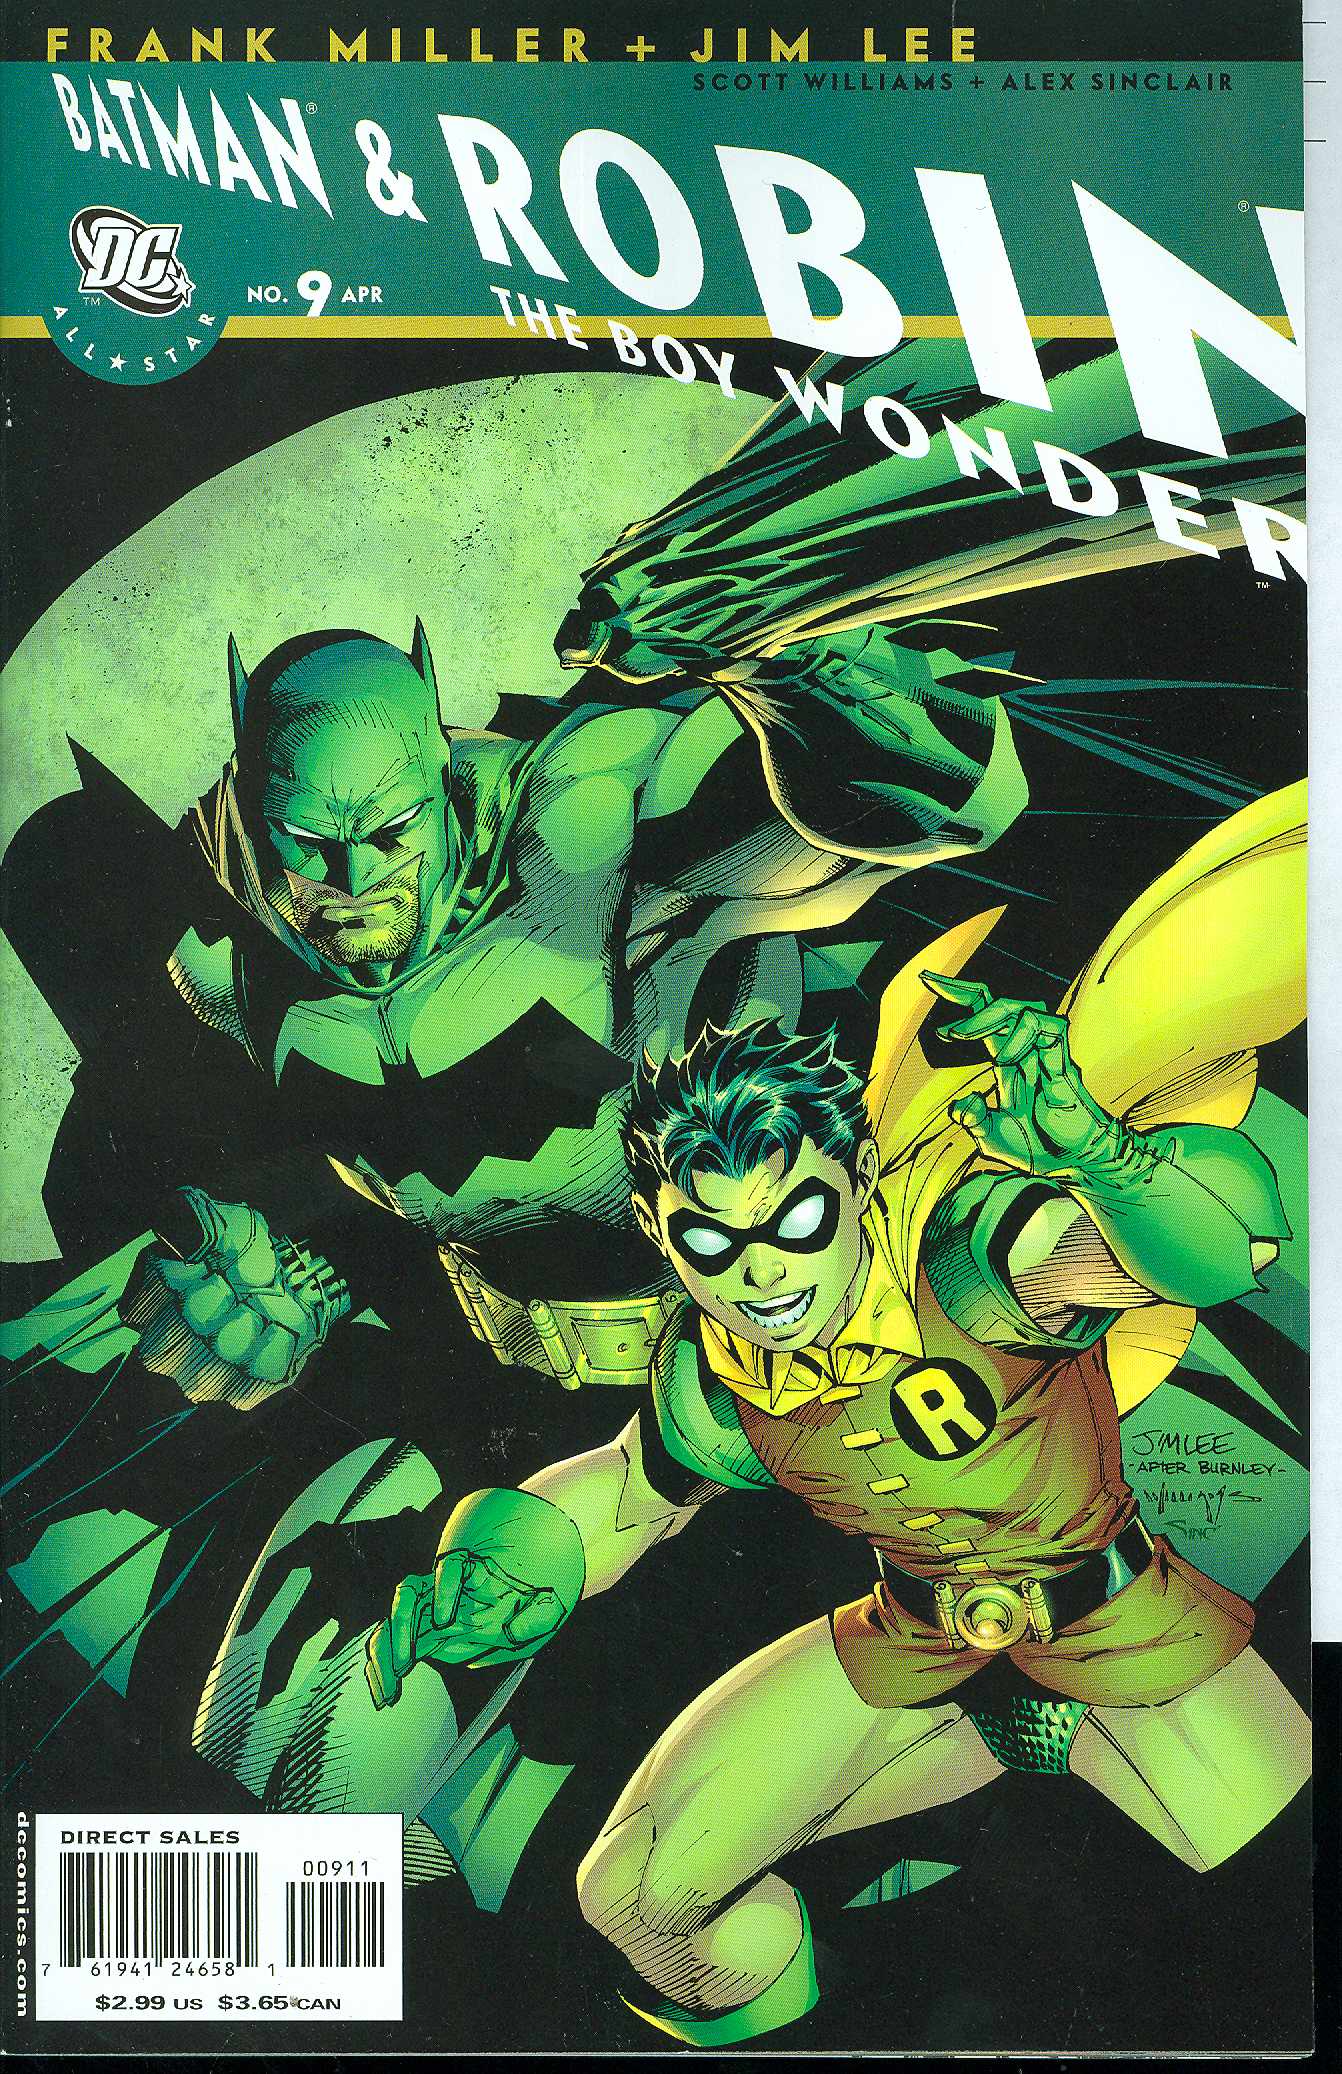 All Star Batman and Robin the Boy Wonder #9 (2005)